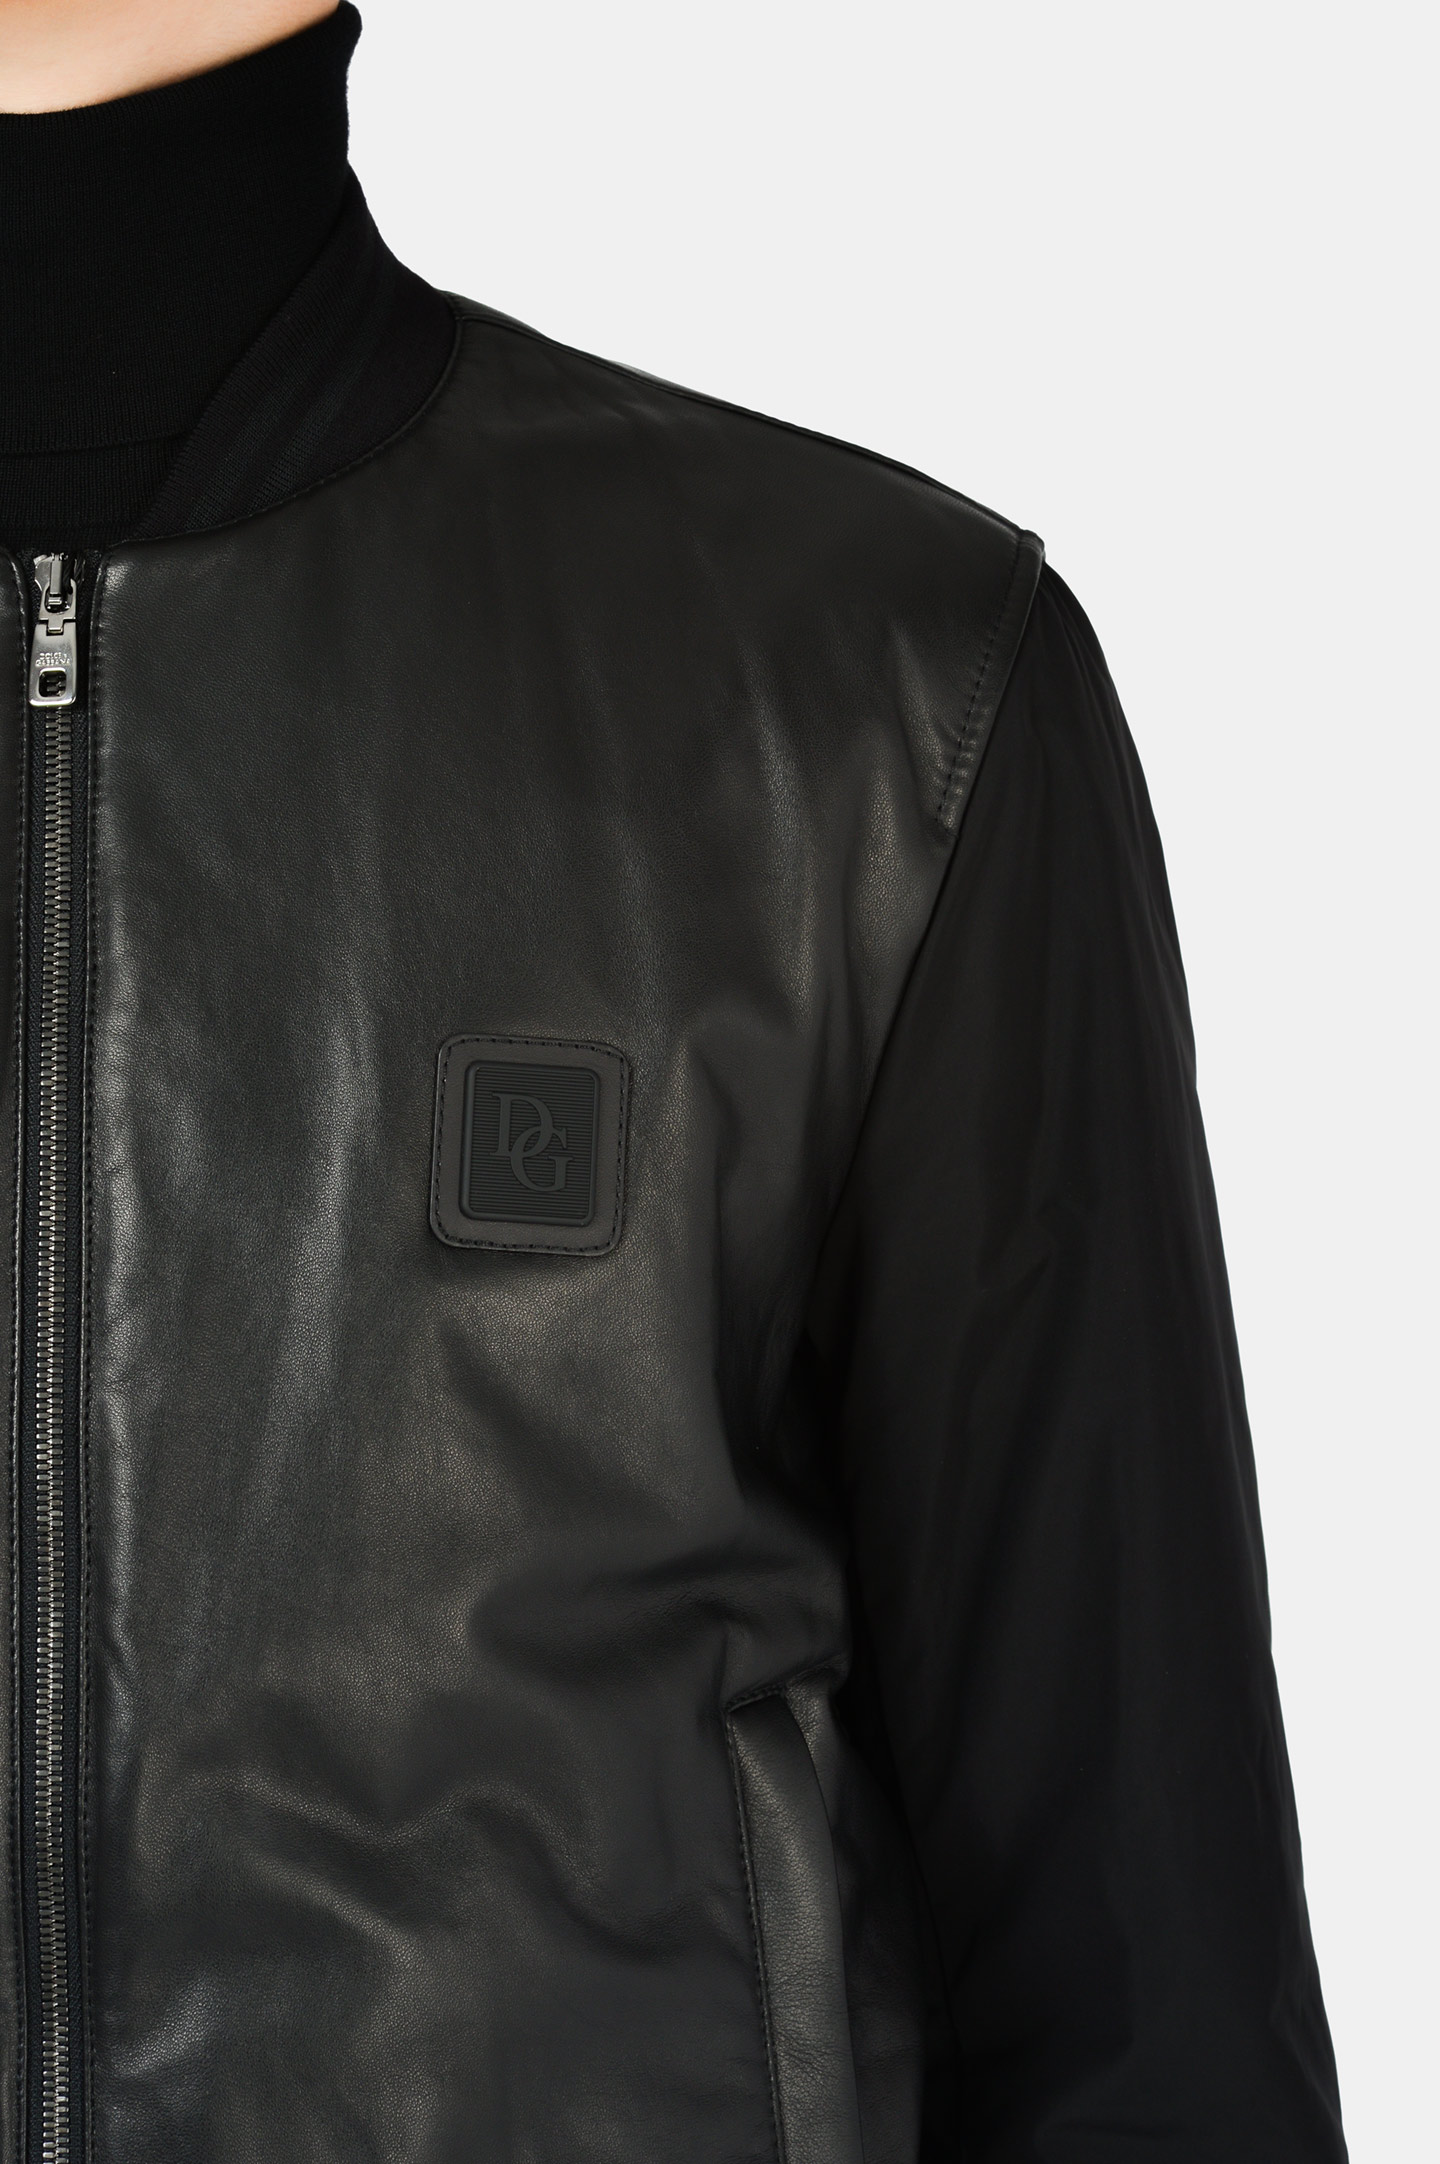 Куртка DOLCE & GABBANA G9TS4L GEO40, цвет: Черный, Мужской